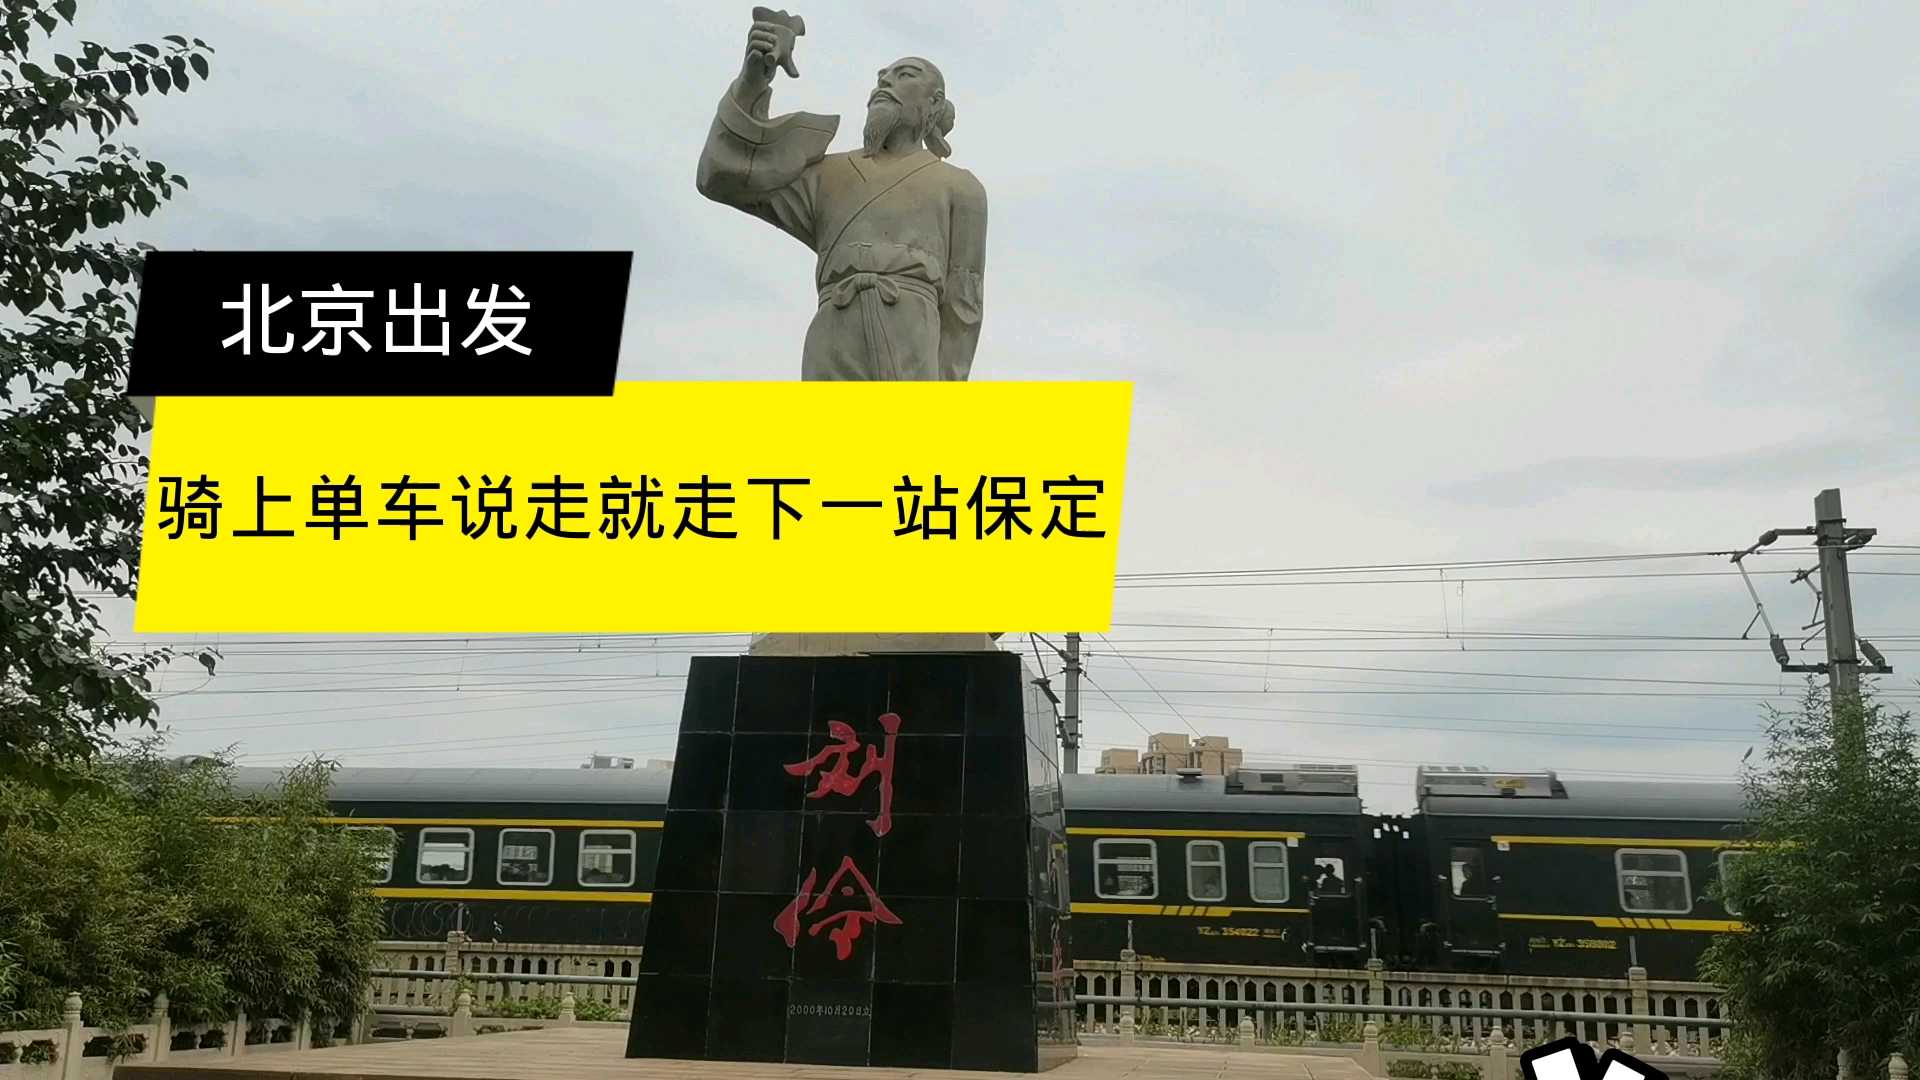 定兴县  到河北徐水了，经过徐水火车站。